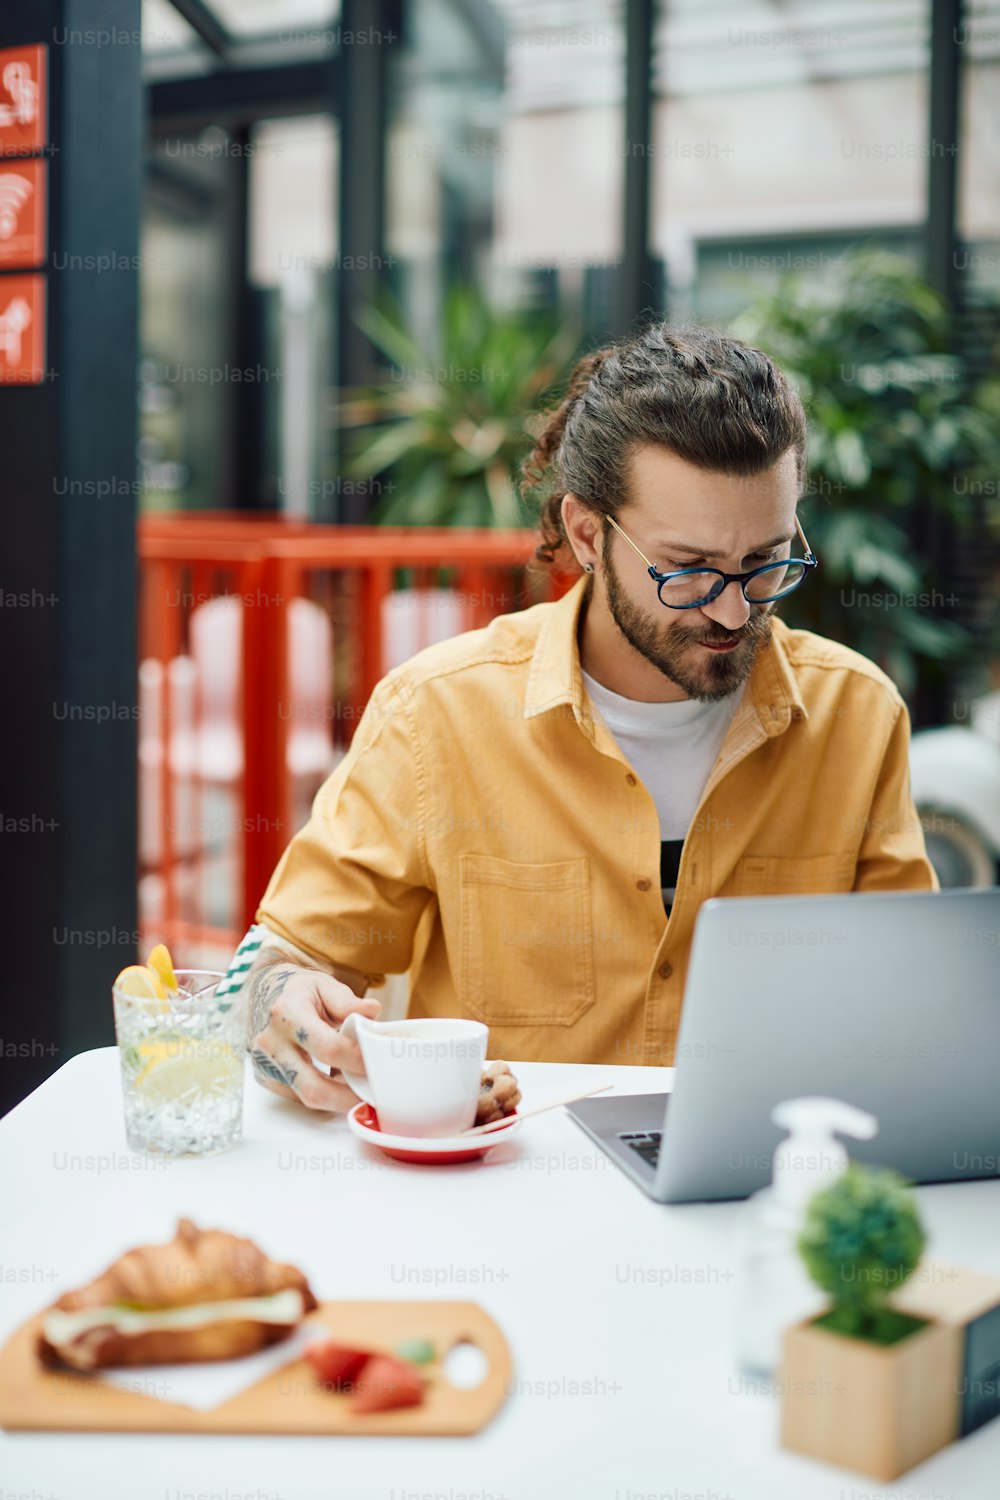 Empresarios masculinos usando una computadora portátil mientras toman una taza de café en una cafetería.